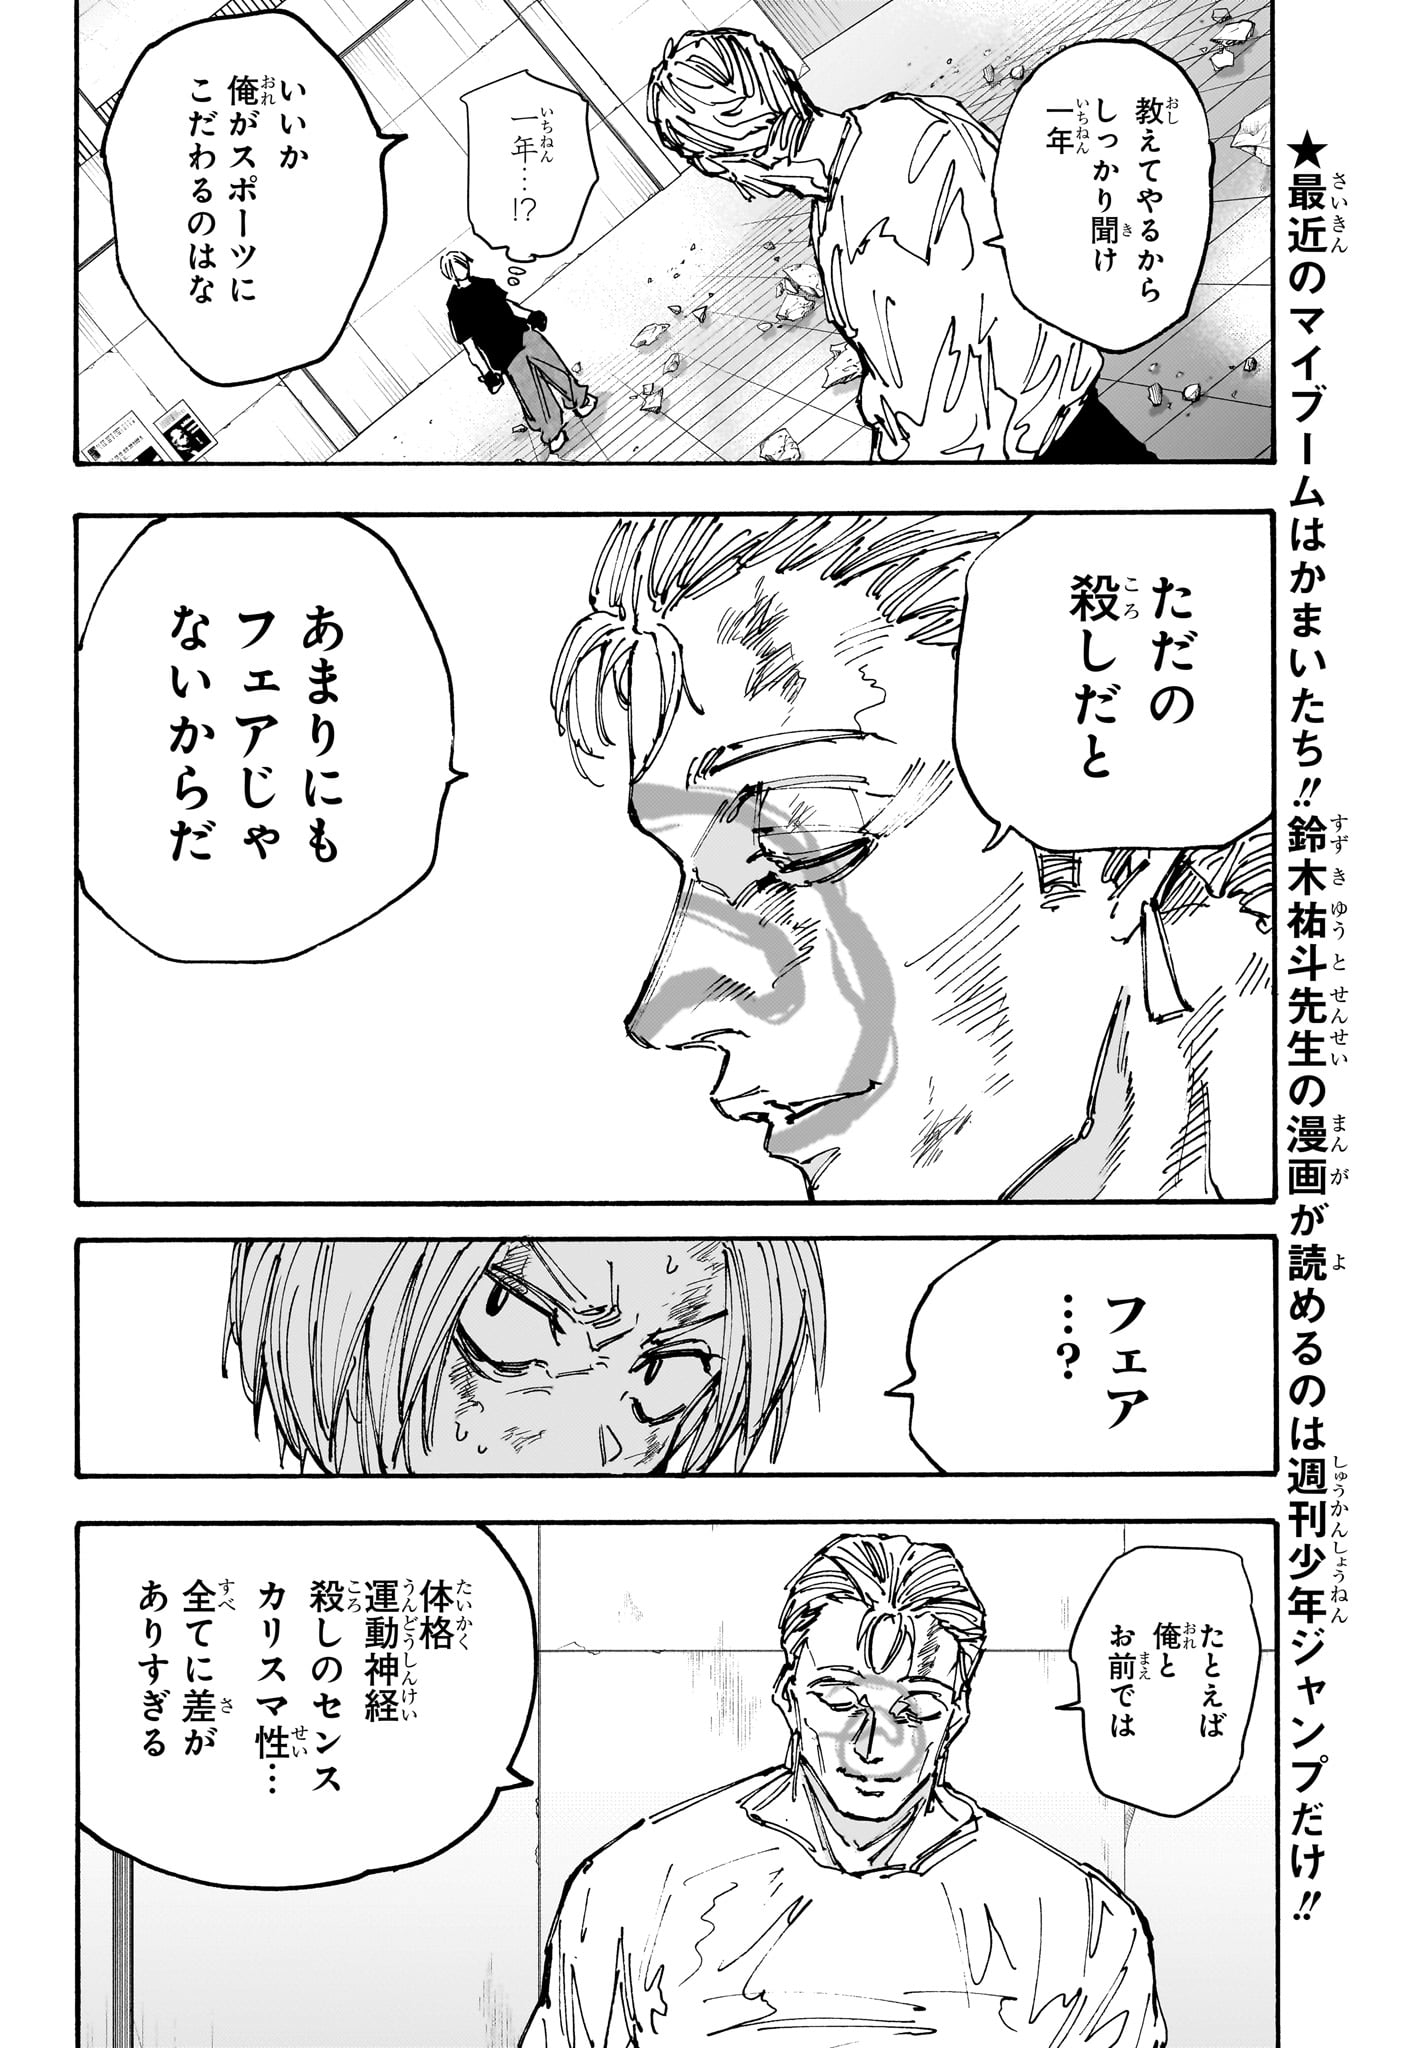 Sakamoto Days - Chapter 157 - Page 2